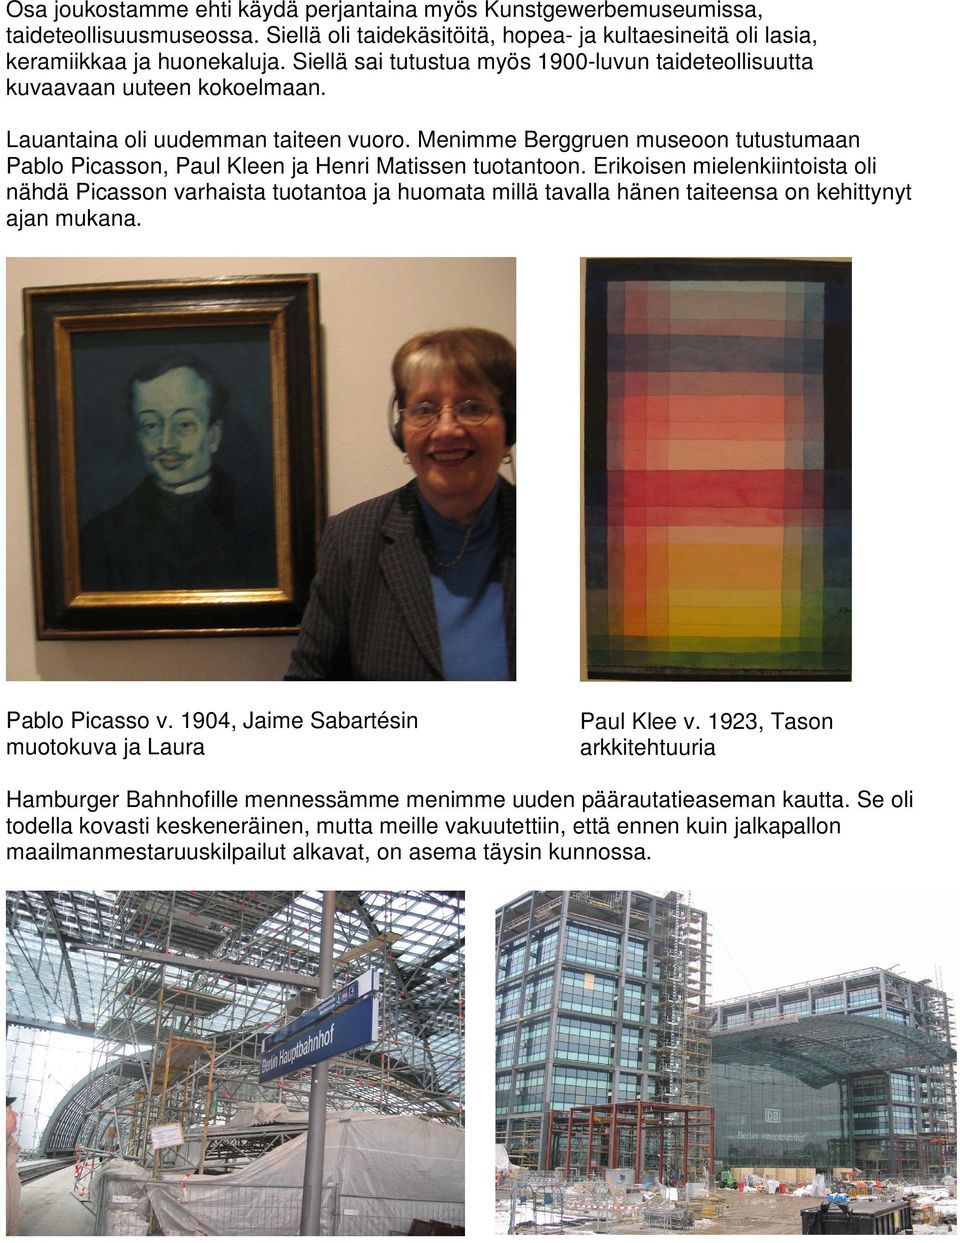 Menimme Berggruen museoon tutustumaan Pablo Picasson, Paul Kleen ja Henri Matissen tuotantoon.